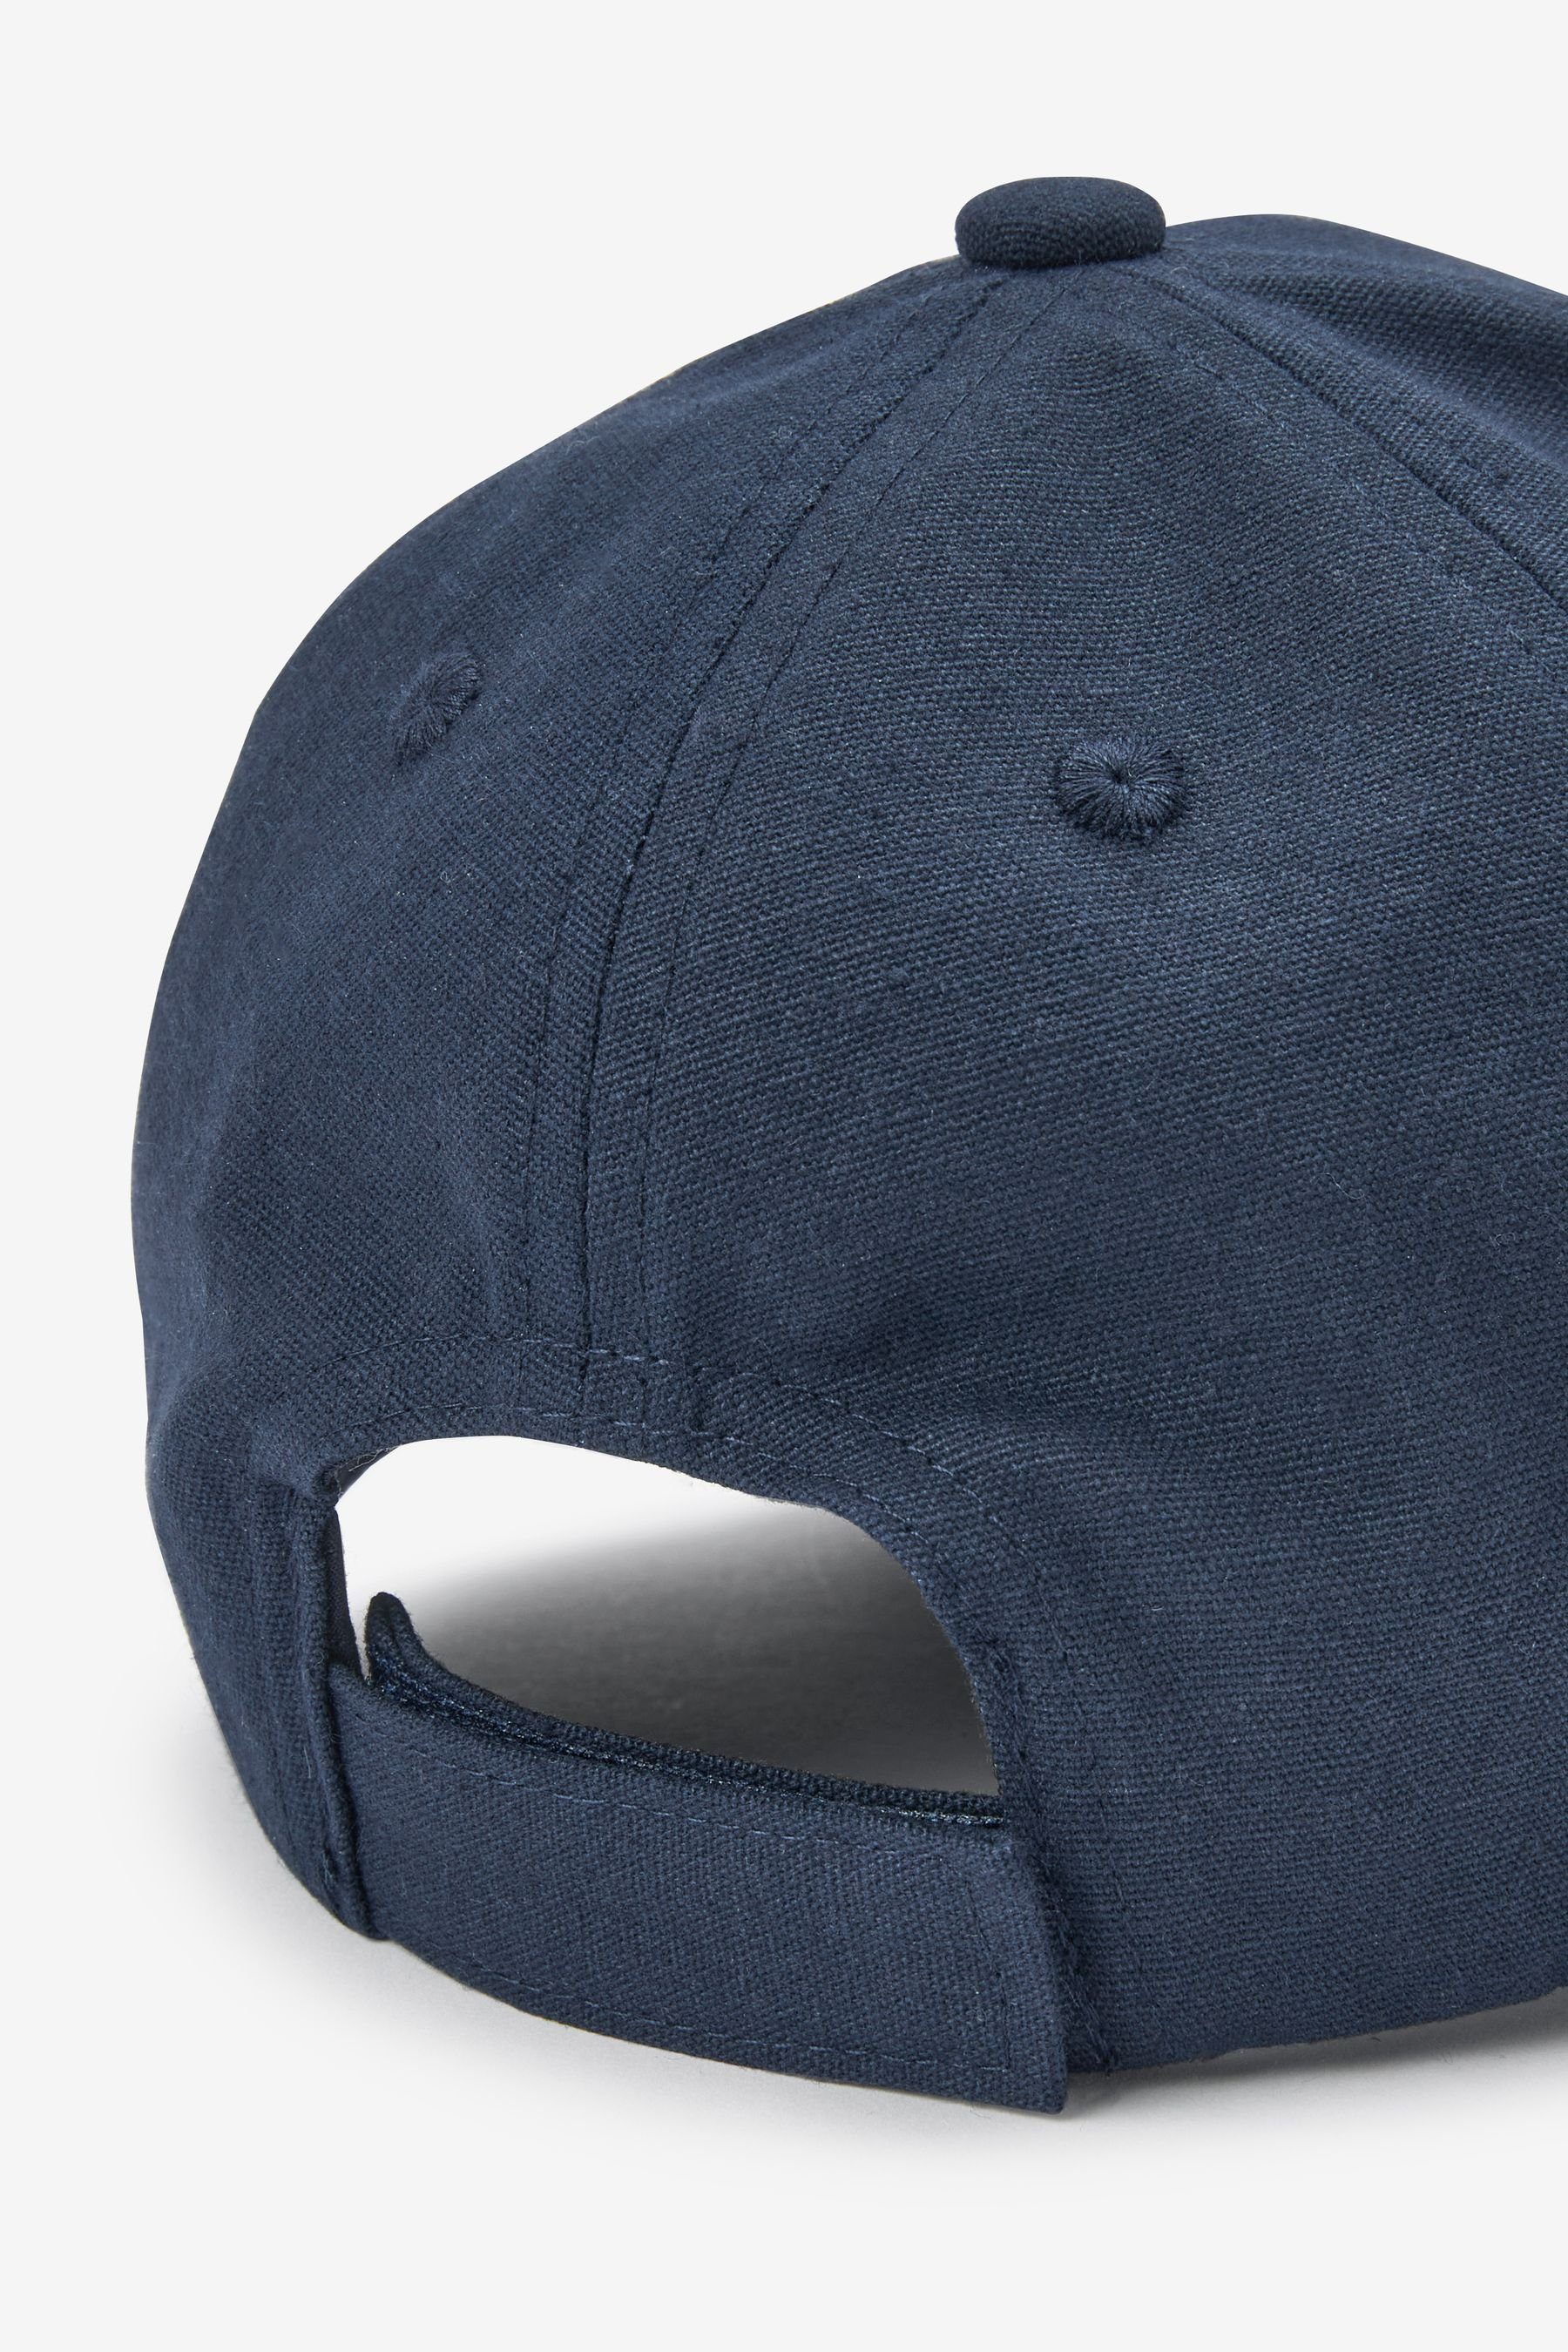 Next Baseball (1-St) Canvas Navy Kappe Cap Blue aus